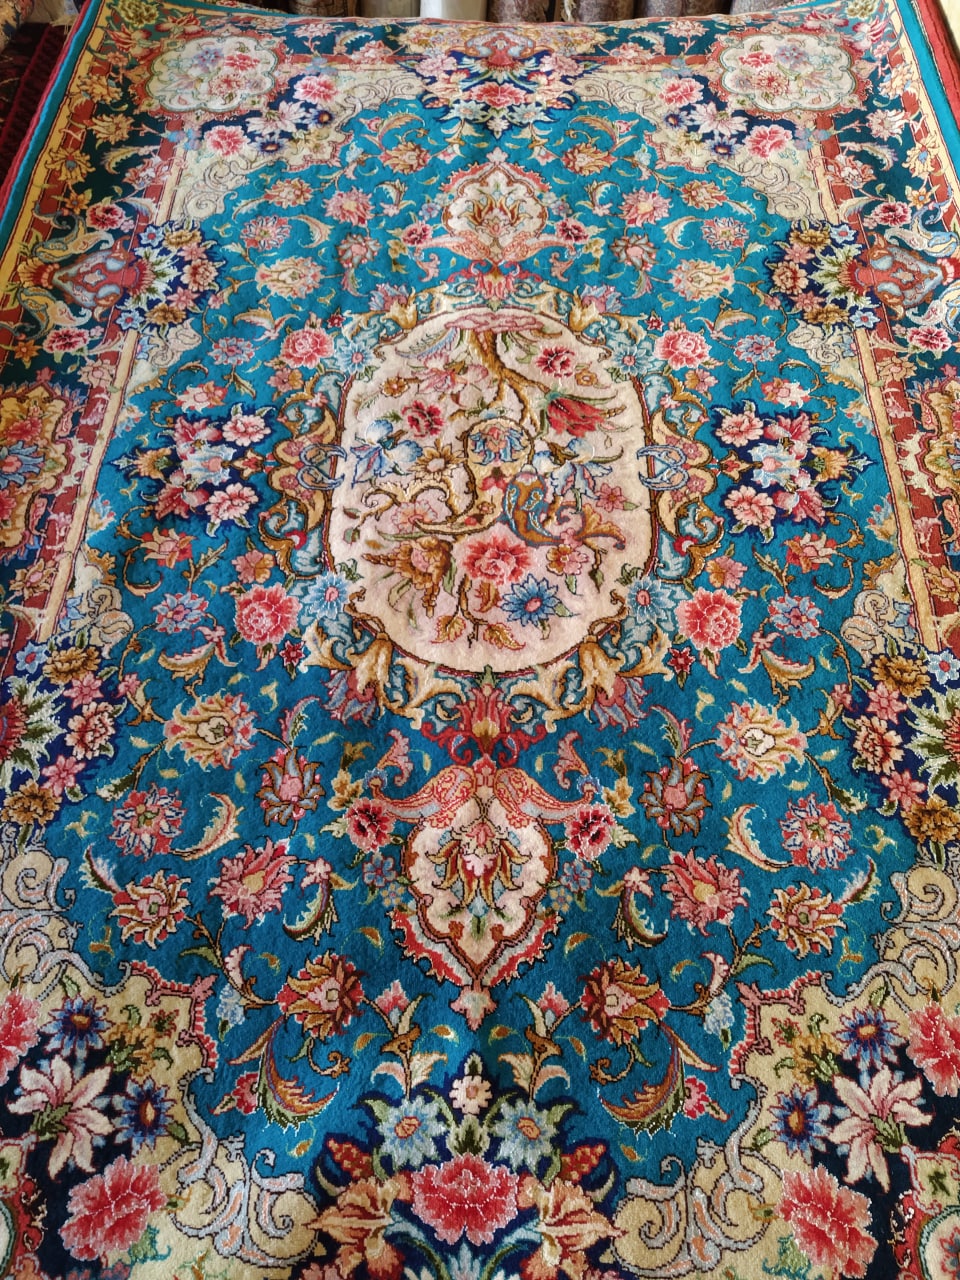 فرش دستبافت 6 متری گل ابریشم سالاری تبریز – خرید از گالری فرش شکوری کارپت